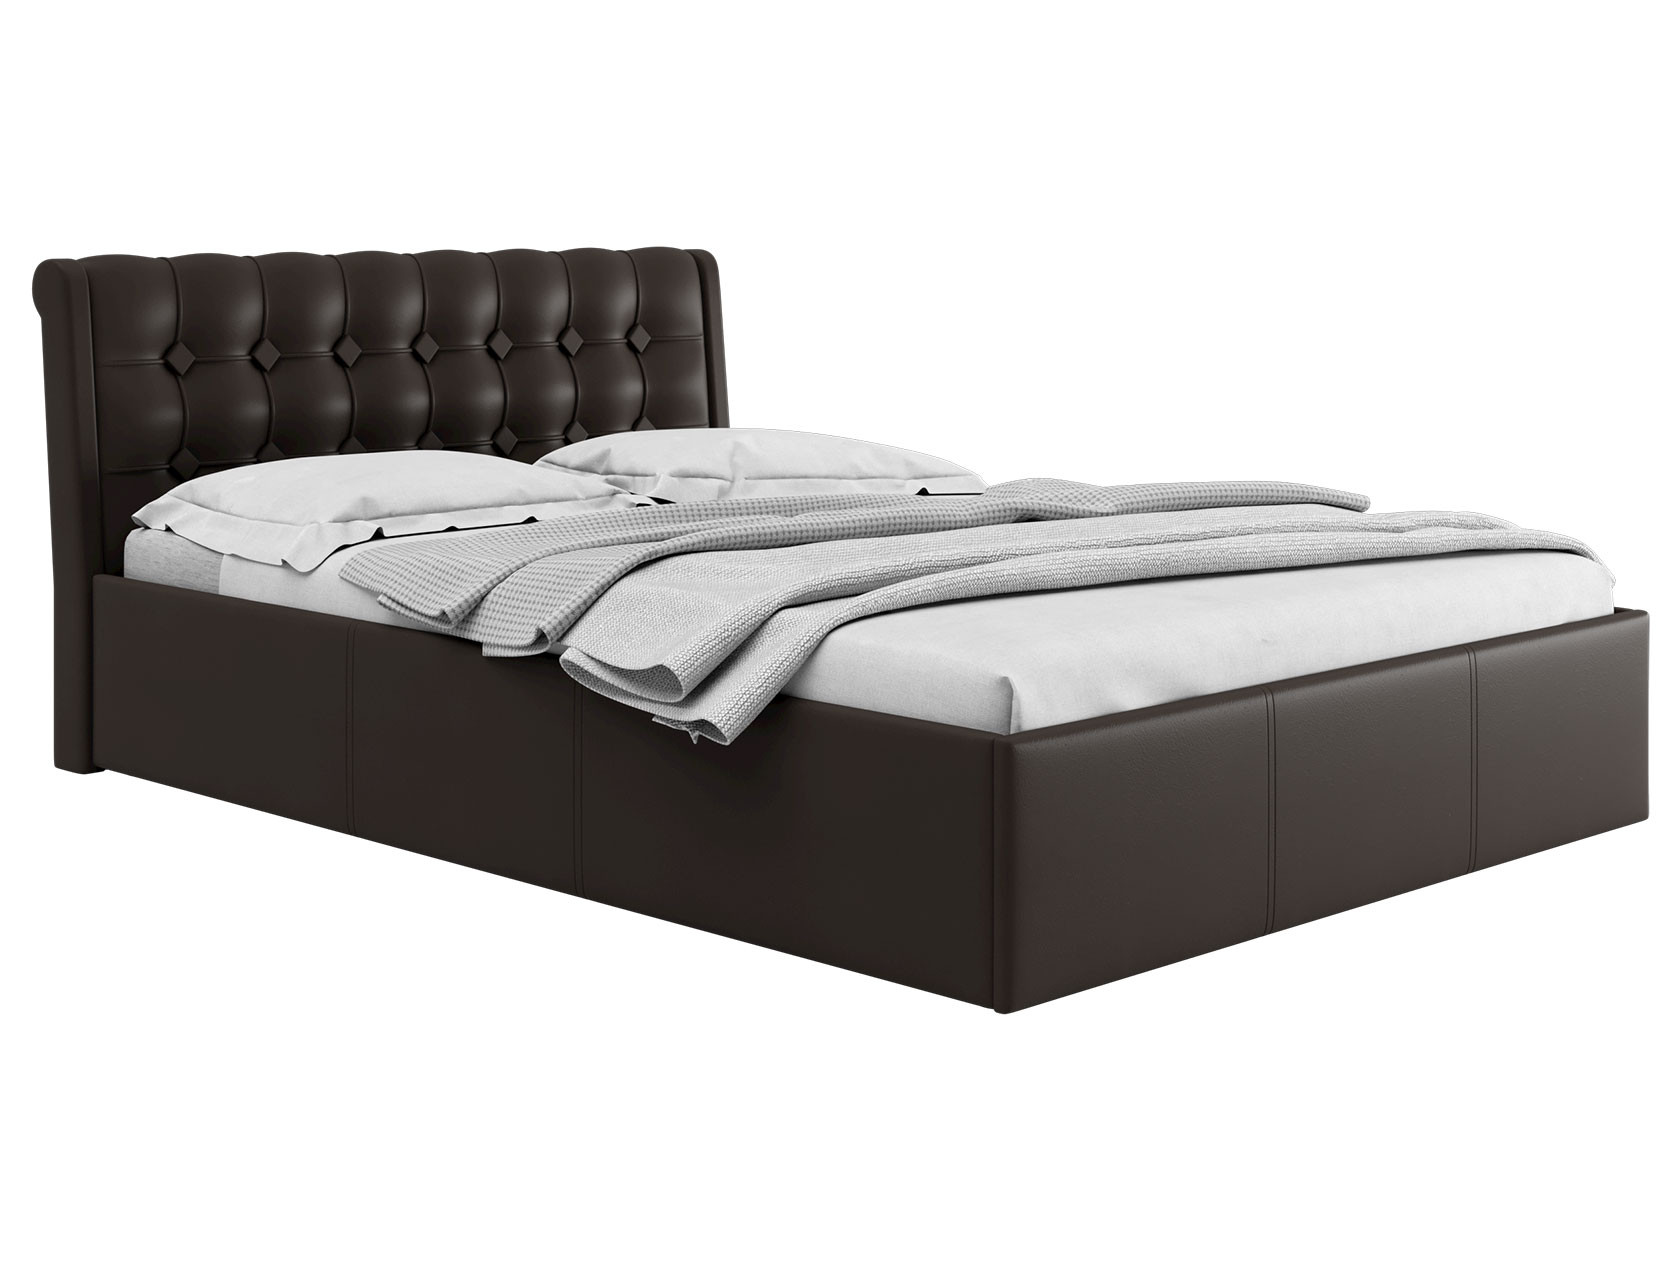 Односпальная кровать  Кровать с подъемным механизмом Эдем Коричневый, экокожа